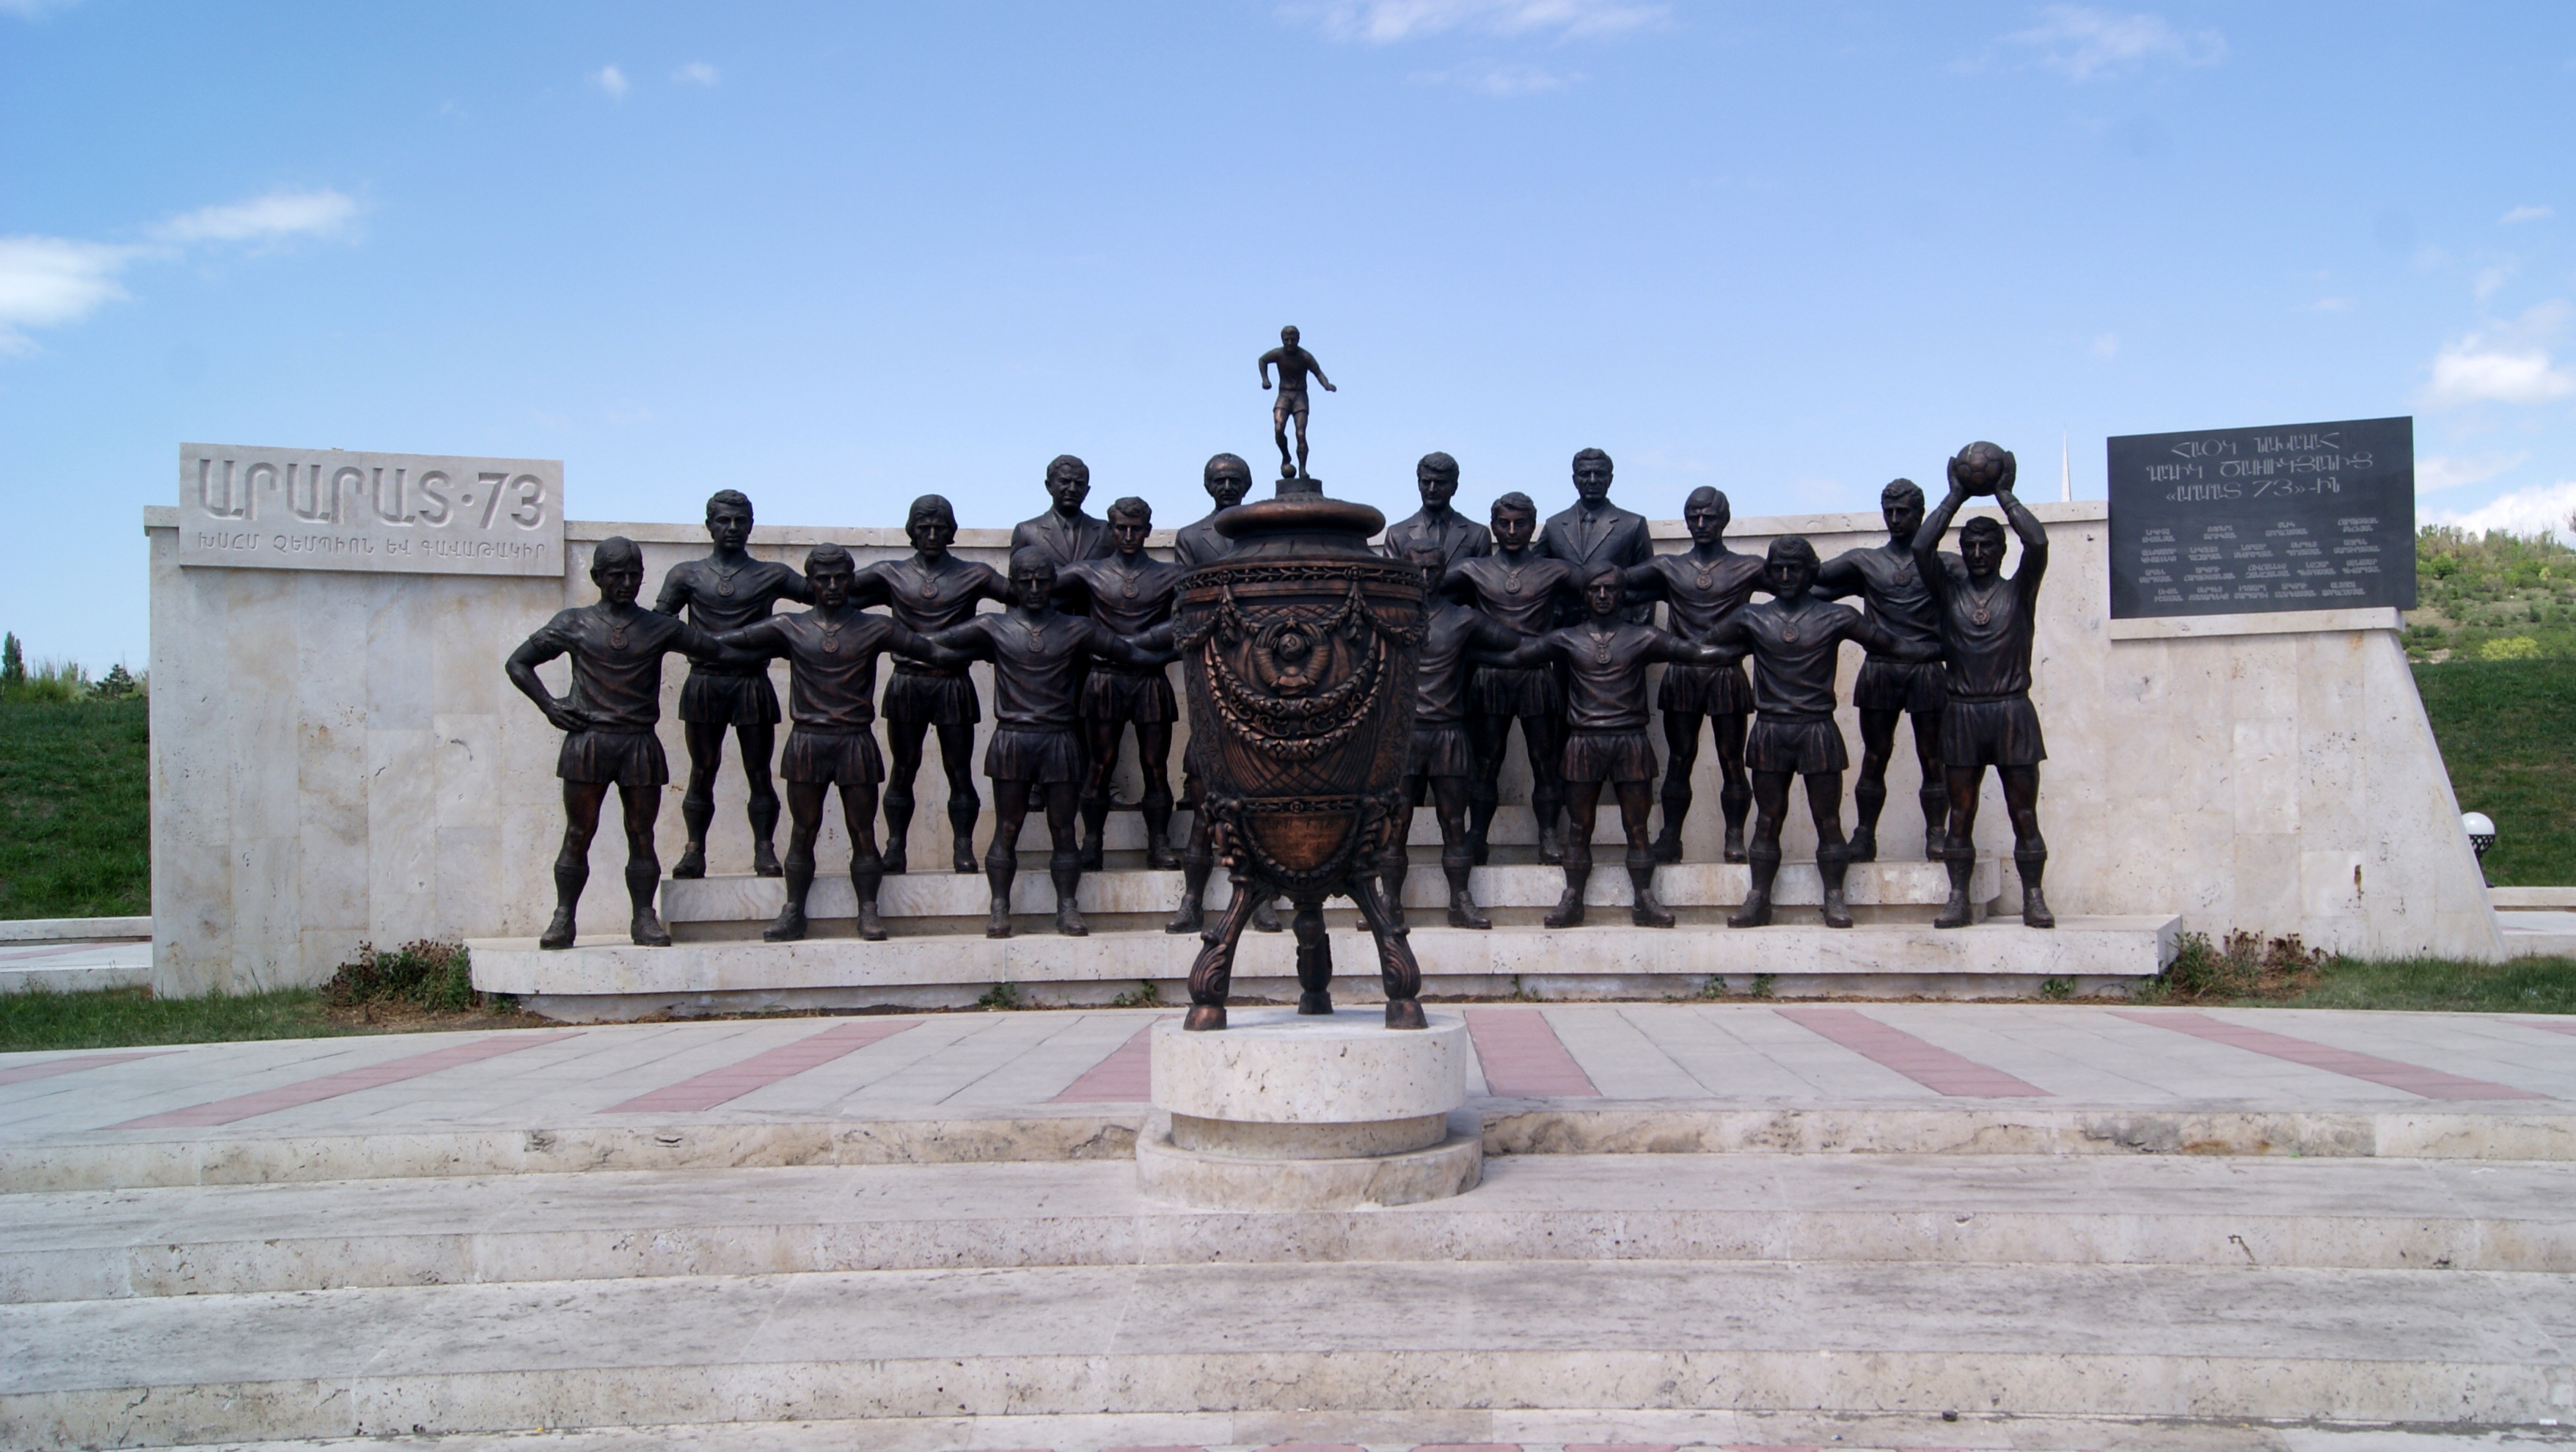 Գողացել են «Արարատ-73»-ին պատկերող արձանախմբից մի քանի ֆուտբոլիստների արձաններ